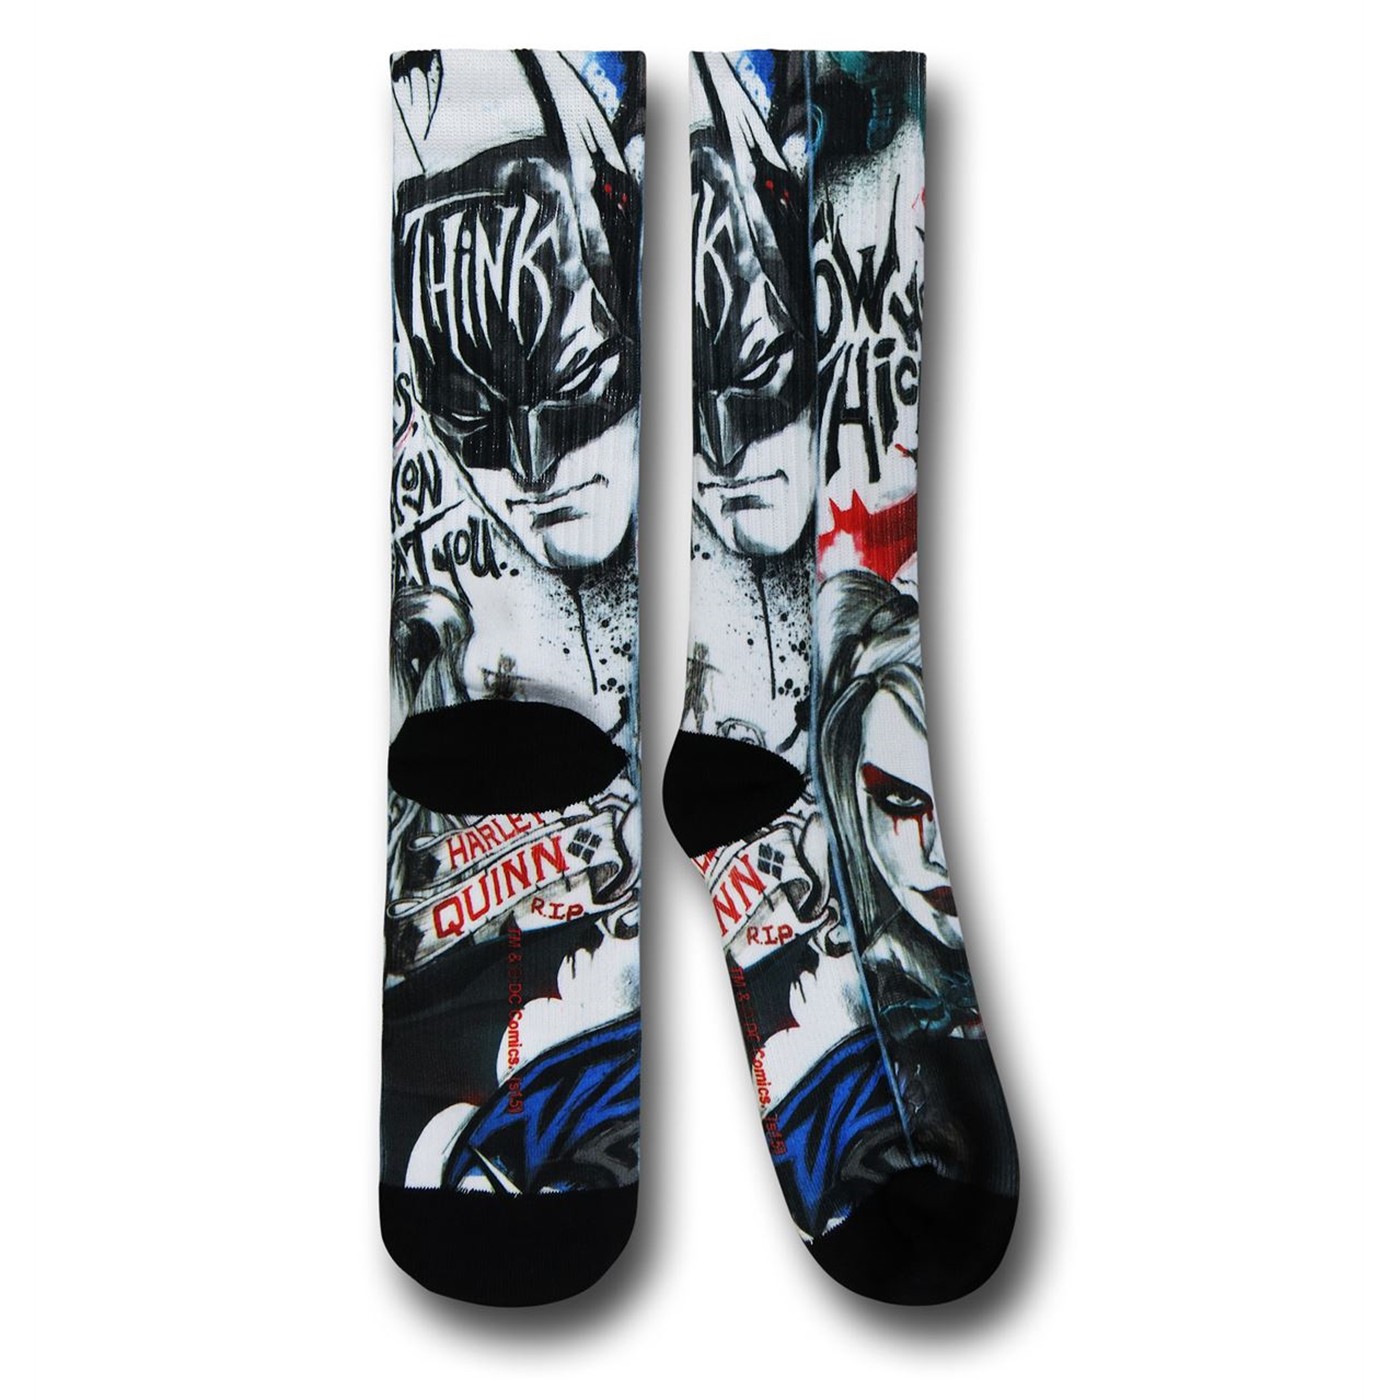 Harley Quinn Image Socks